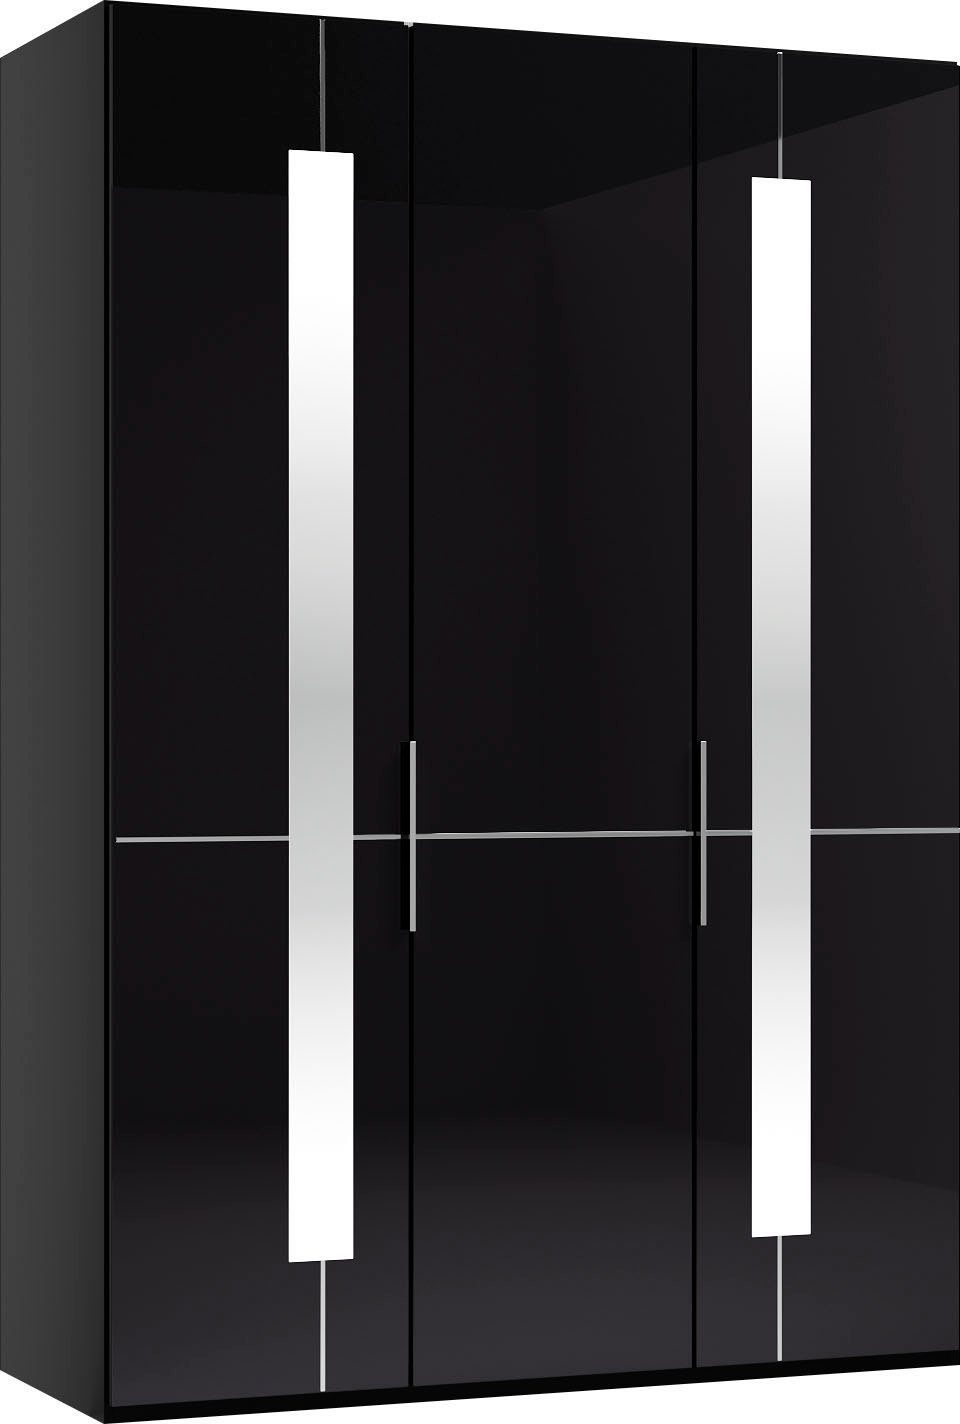 GALLERY Zierspiegel Musterring by Graphit Imola W mit Kleiderstangen, inklusive Glastüren branded und Drehtürenschrank Einlegeböden M